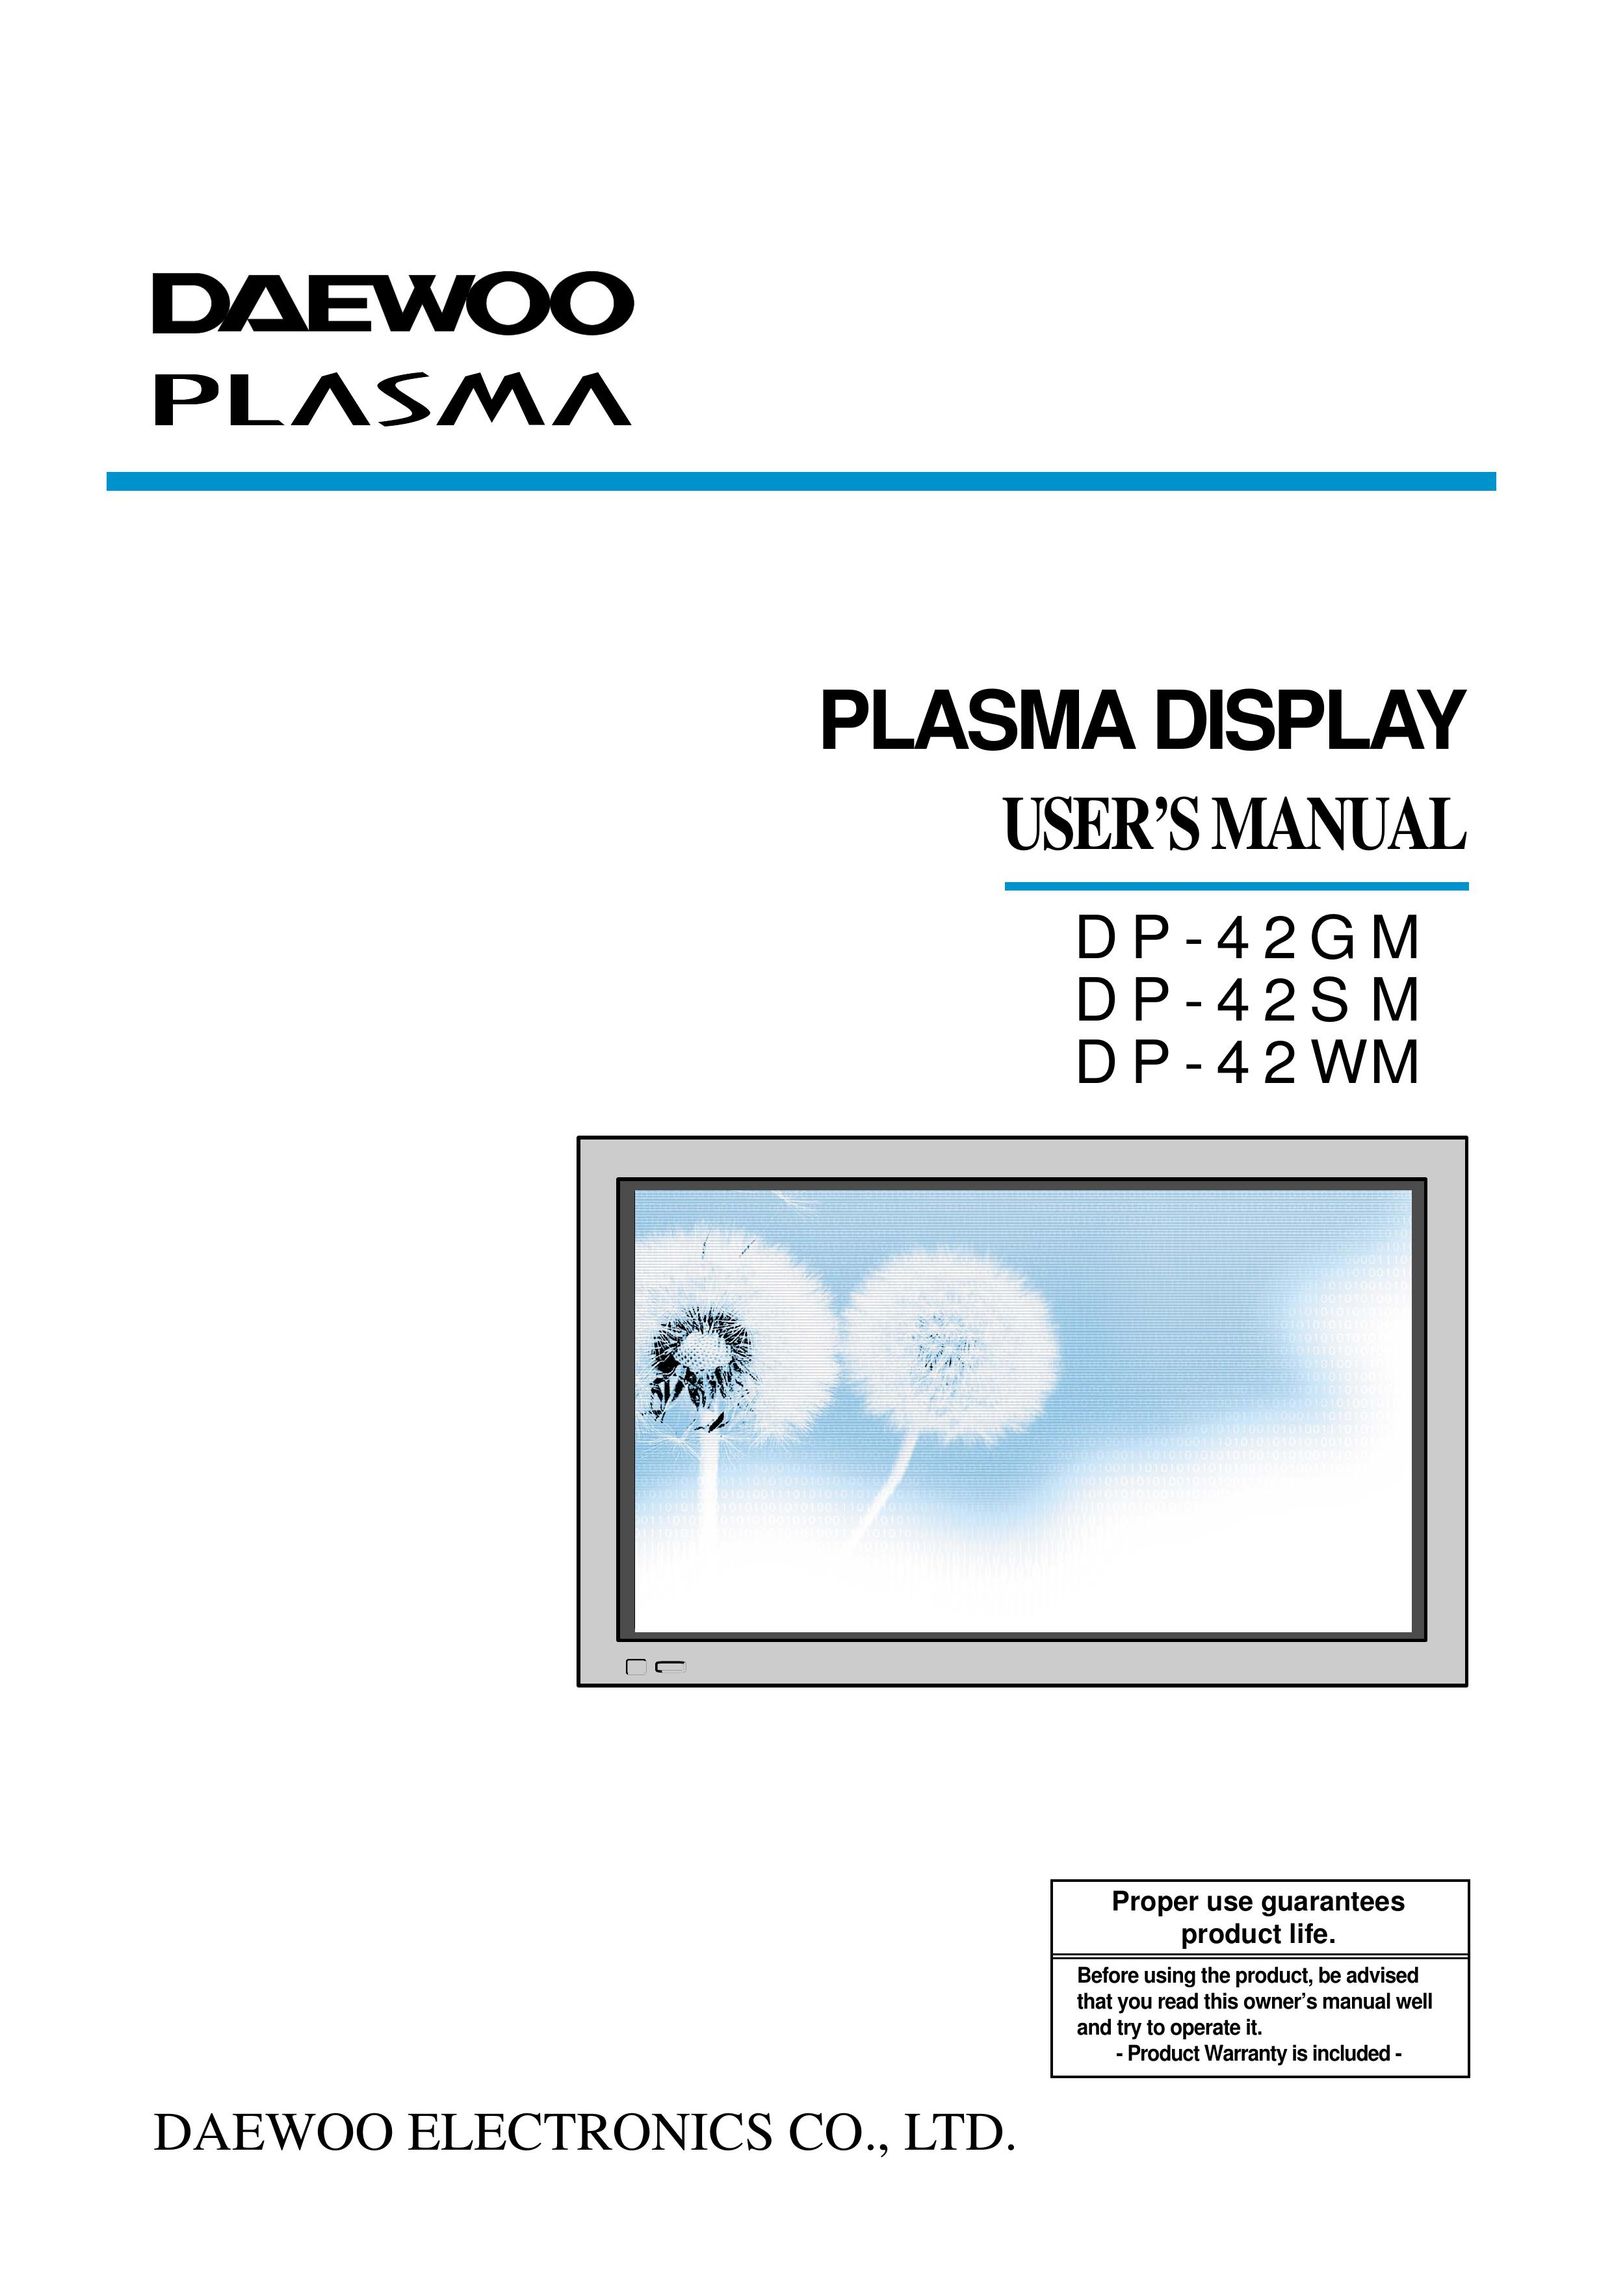 Daewoo DP-42GM Flat Panel Television User Manual